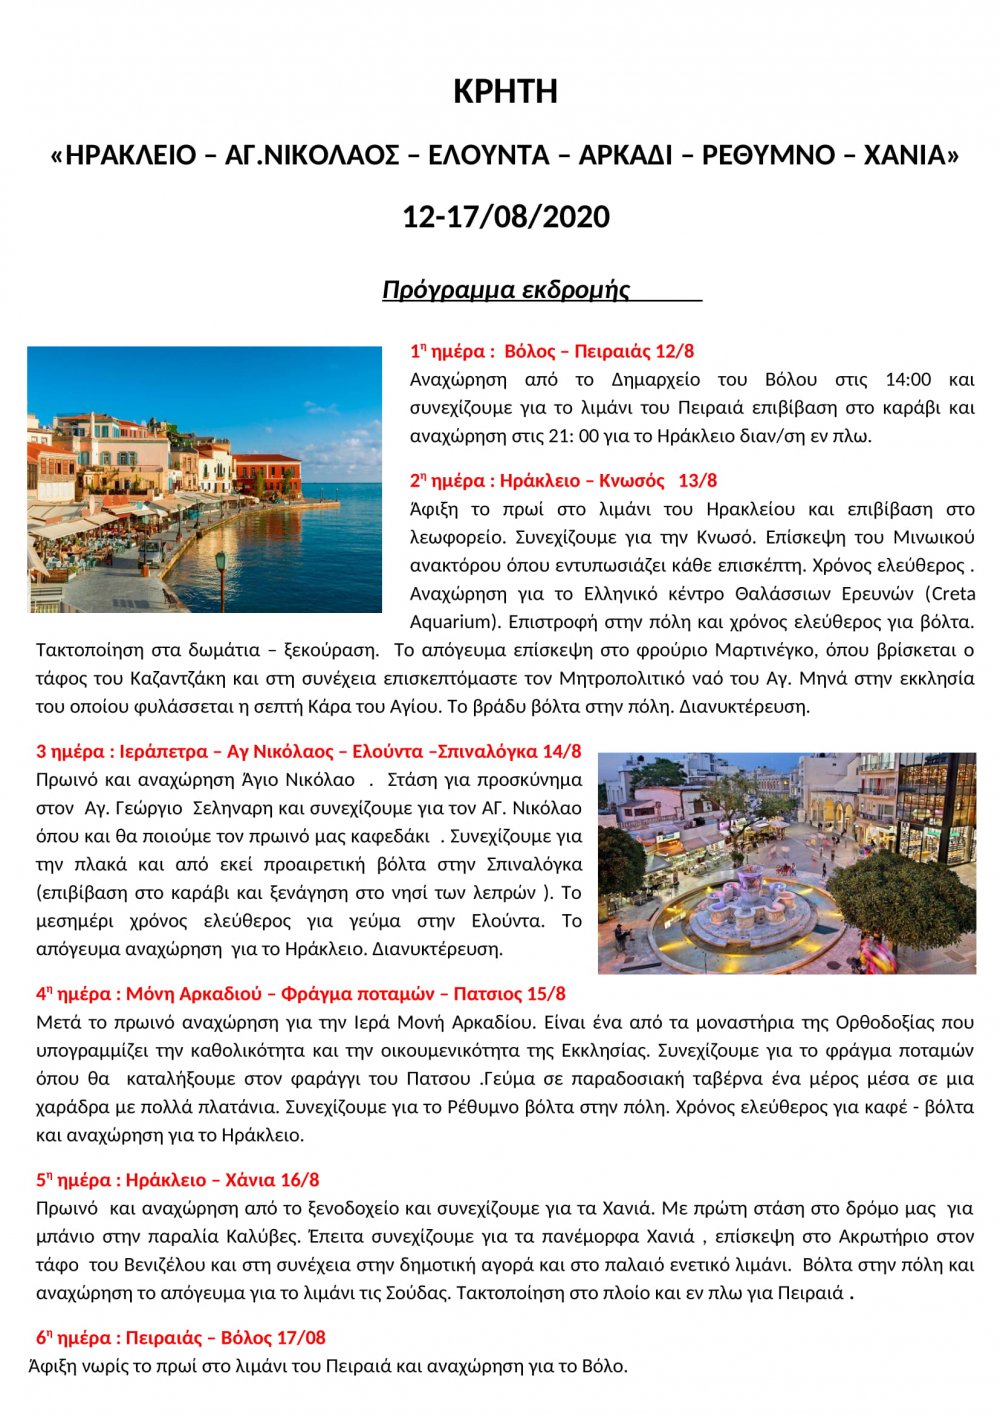 Νιώστε Καλοκαίρι με το Tsinoudis Travel!